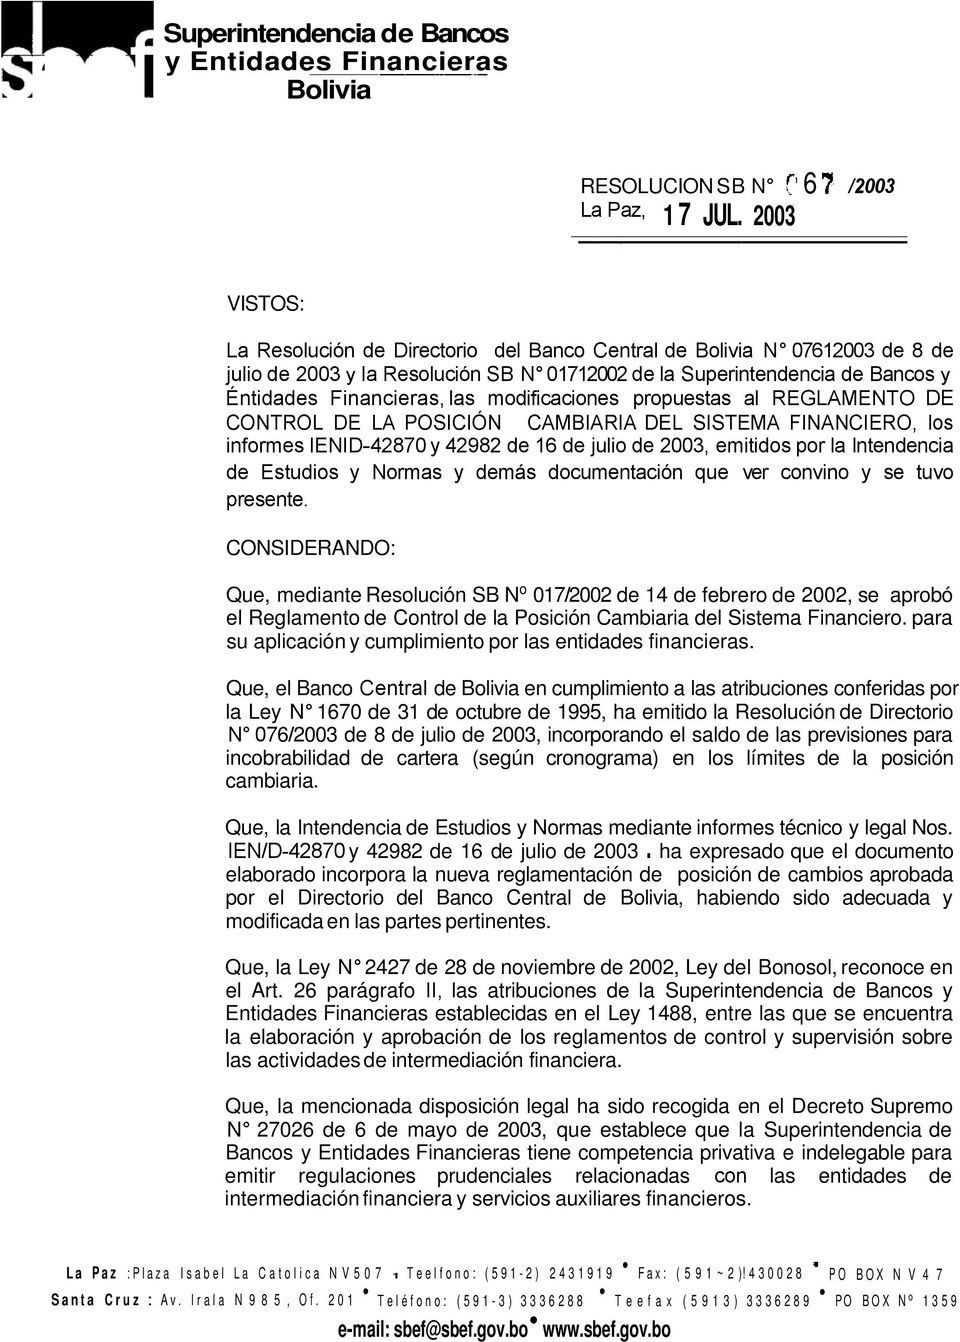 modificaciones propuestas al REGLAMENTO DE CONTROL DE LA POSICIÓN CAMBIARIA DEL SISTEMA FINANCIERO, los informes IENID-42870 y 42982 de 16 de julio de 2003, emitidos por la lntendencia de Estudios y